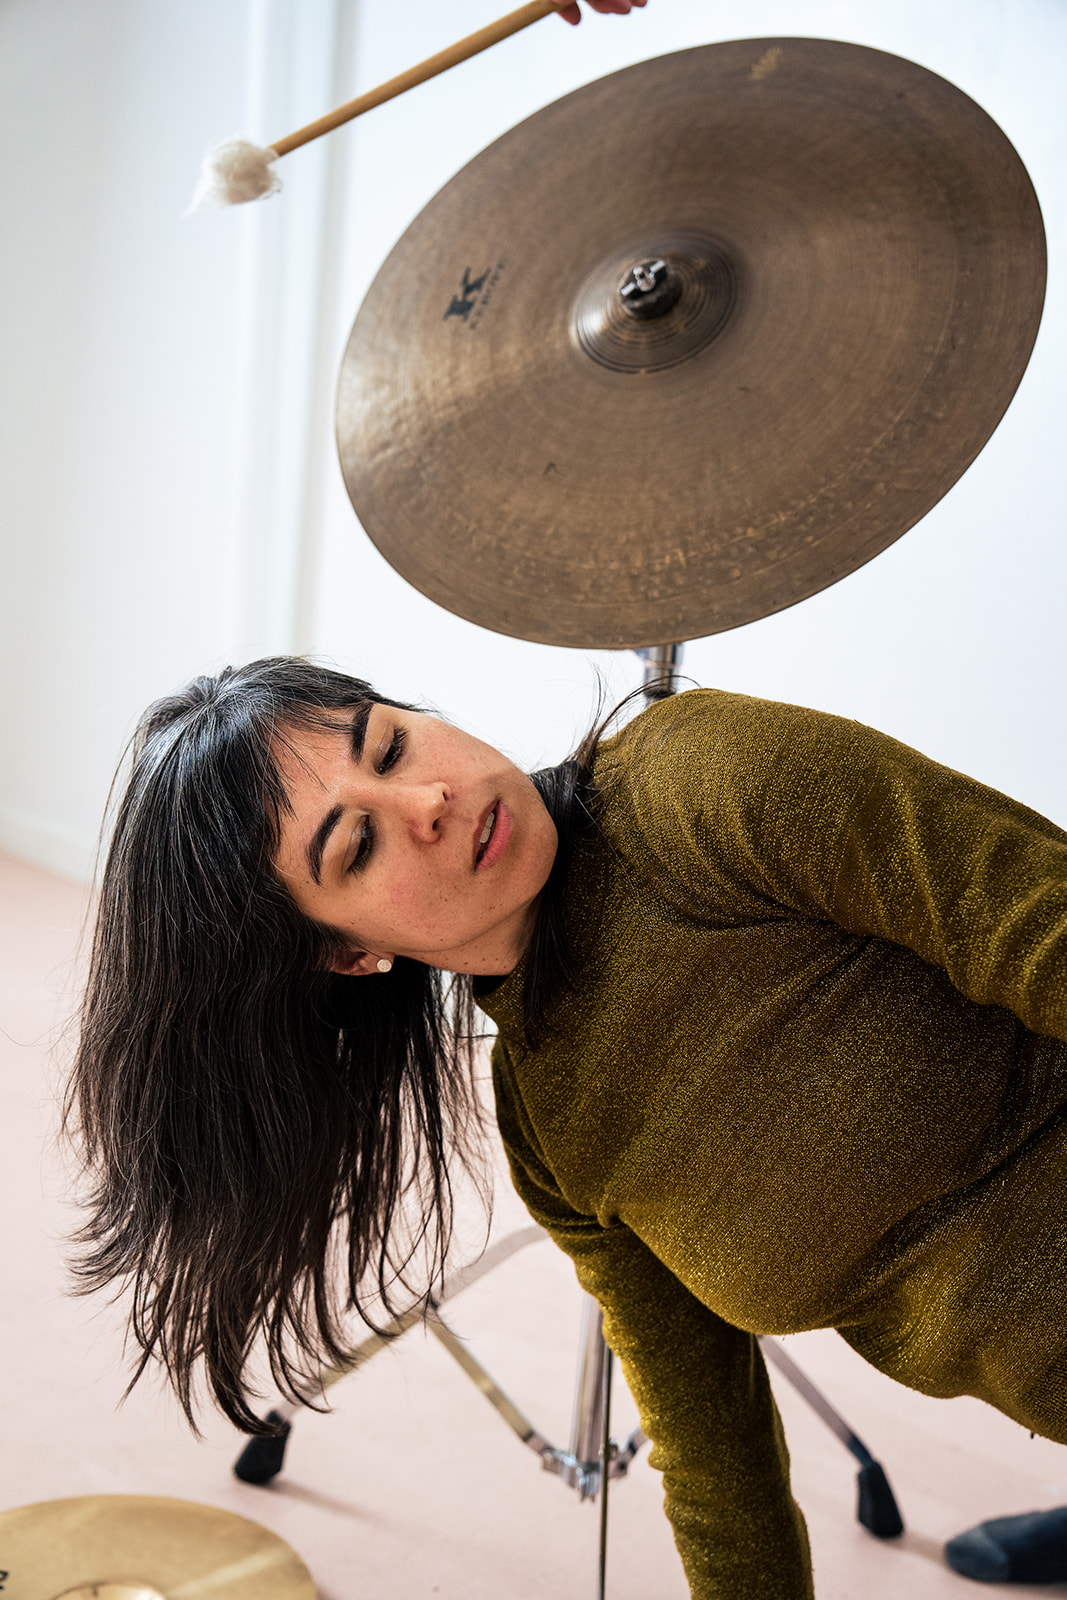 A woman leans sideways underneath a cymbal